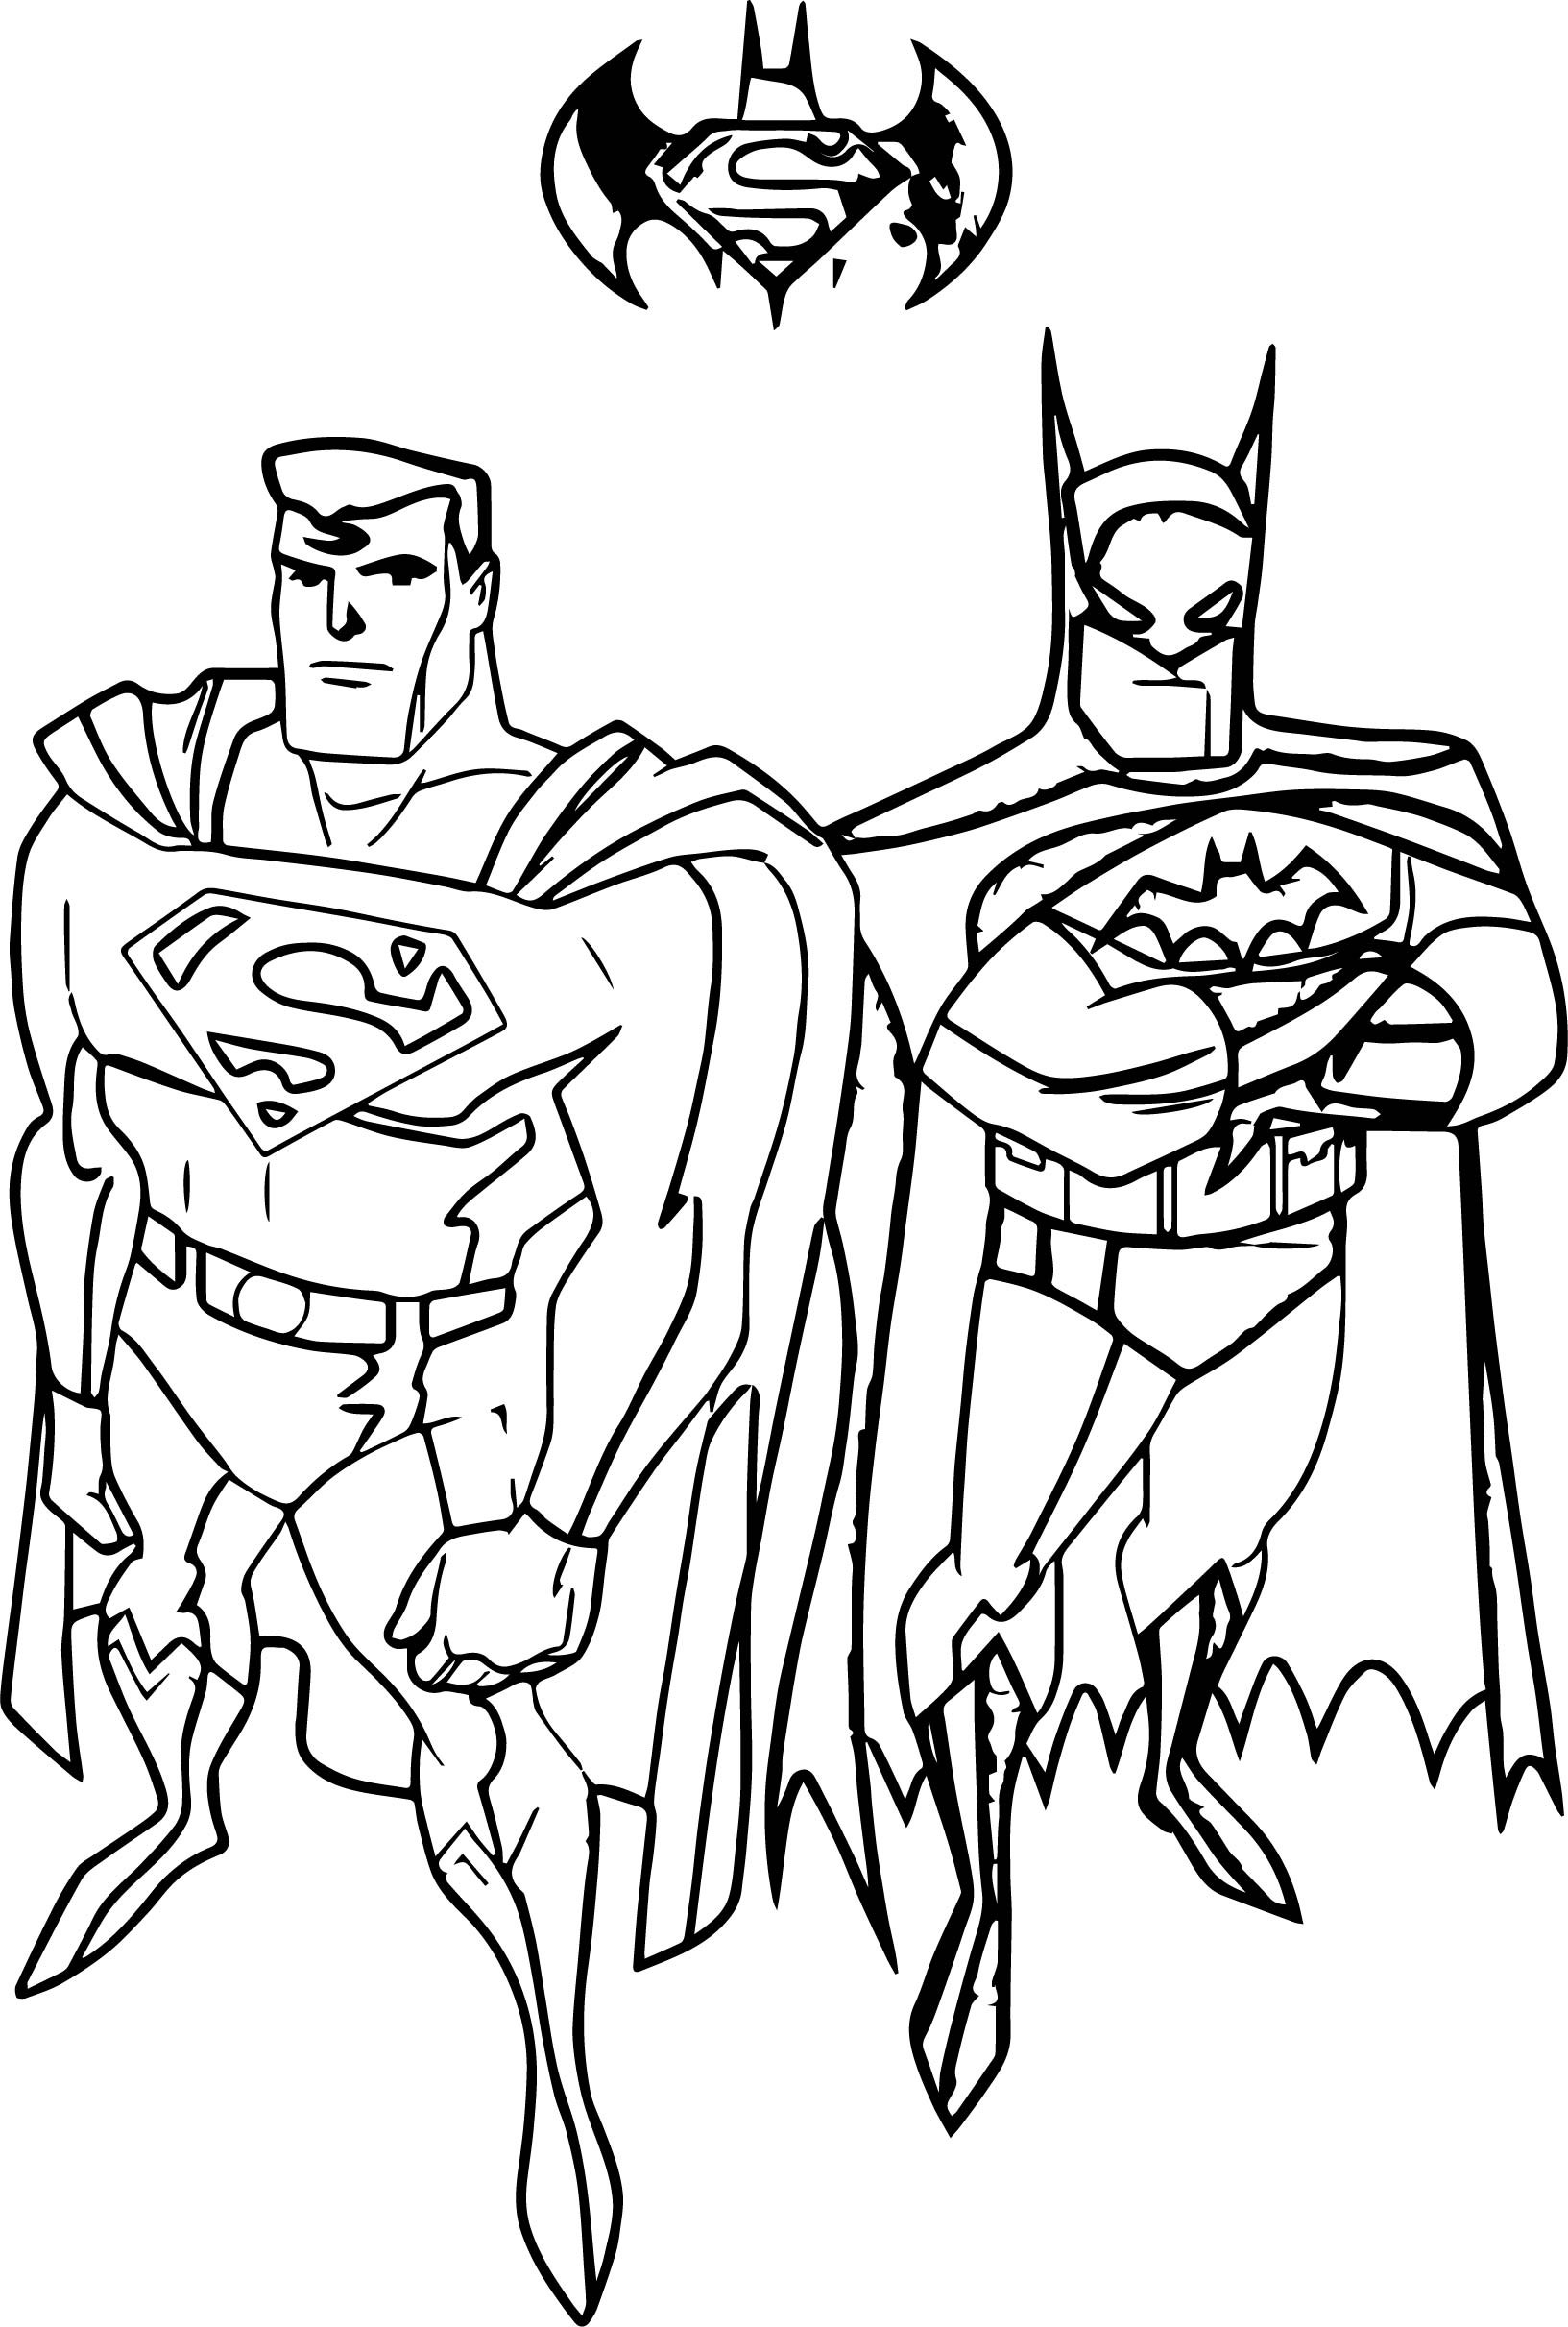 Batman Coloring Pages For Kids
 Batman vs superman coloring pages Coloring pages for kids